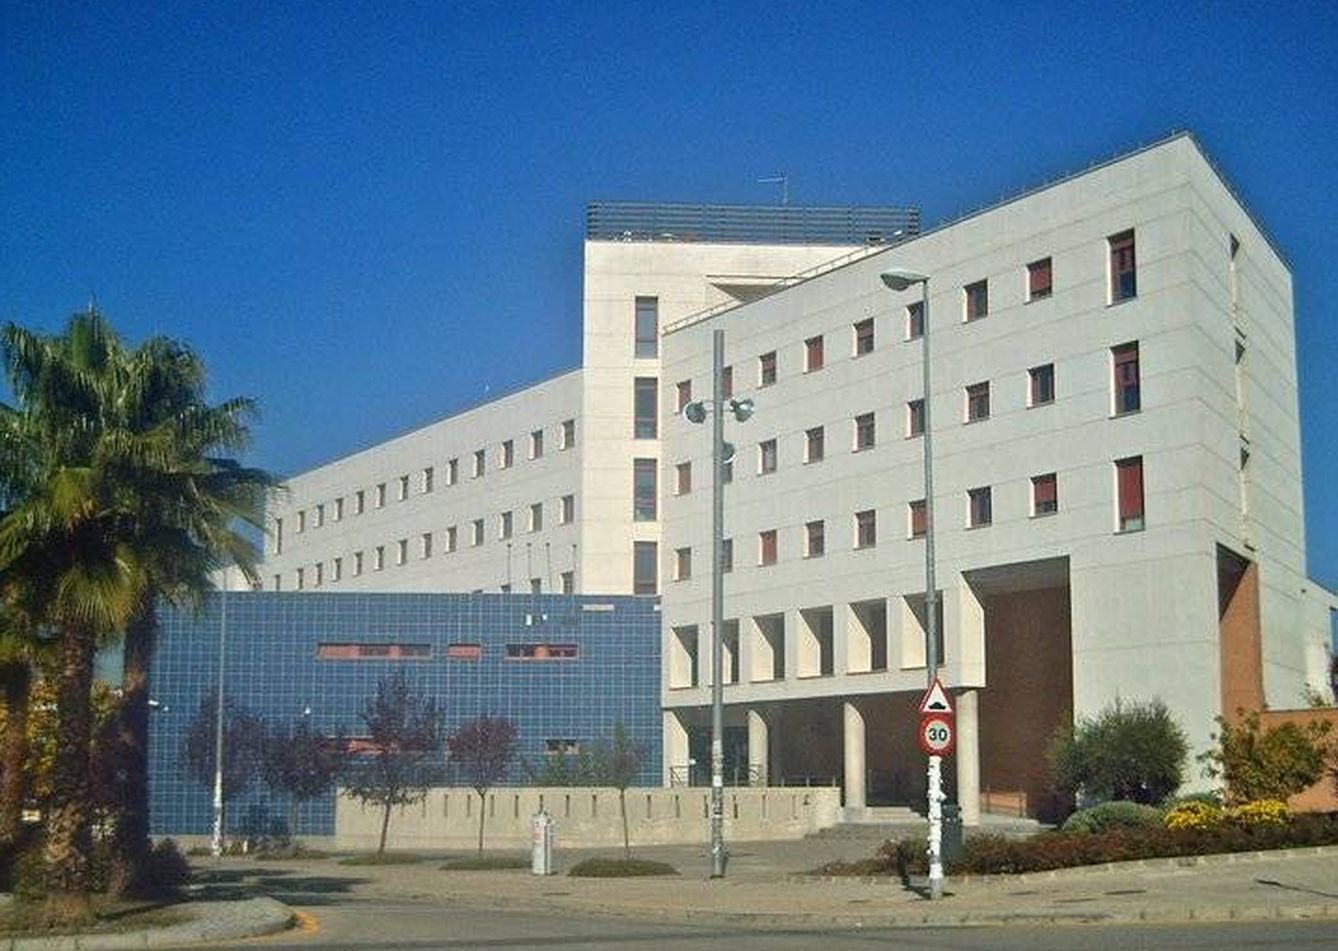 Edificio de la Escuela Técnica Superior de Ingenierías Informática y de Telecomunicación (ETSIIT) de Granada. (Wikimedia Commons)